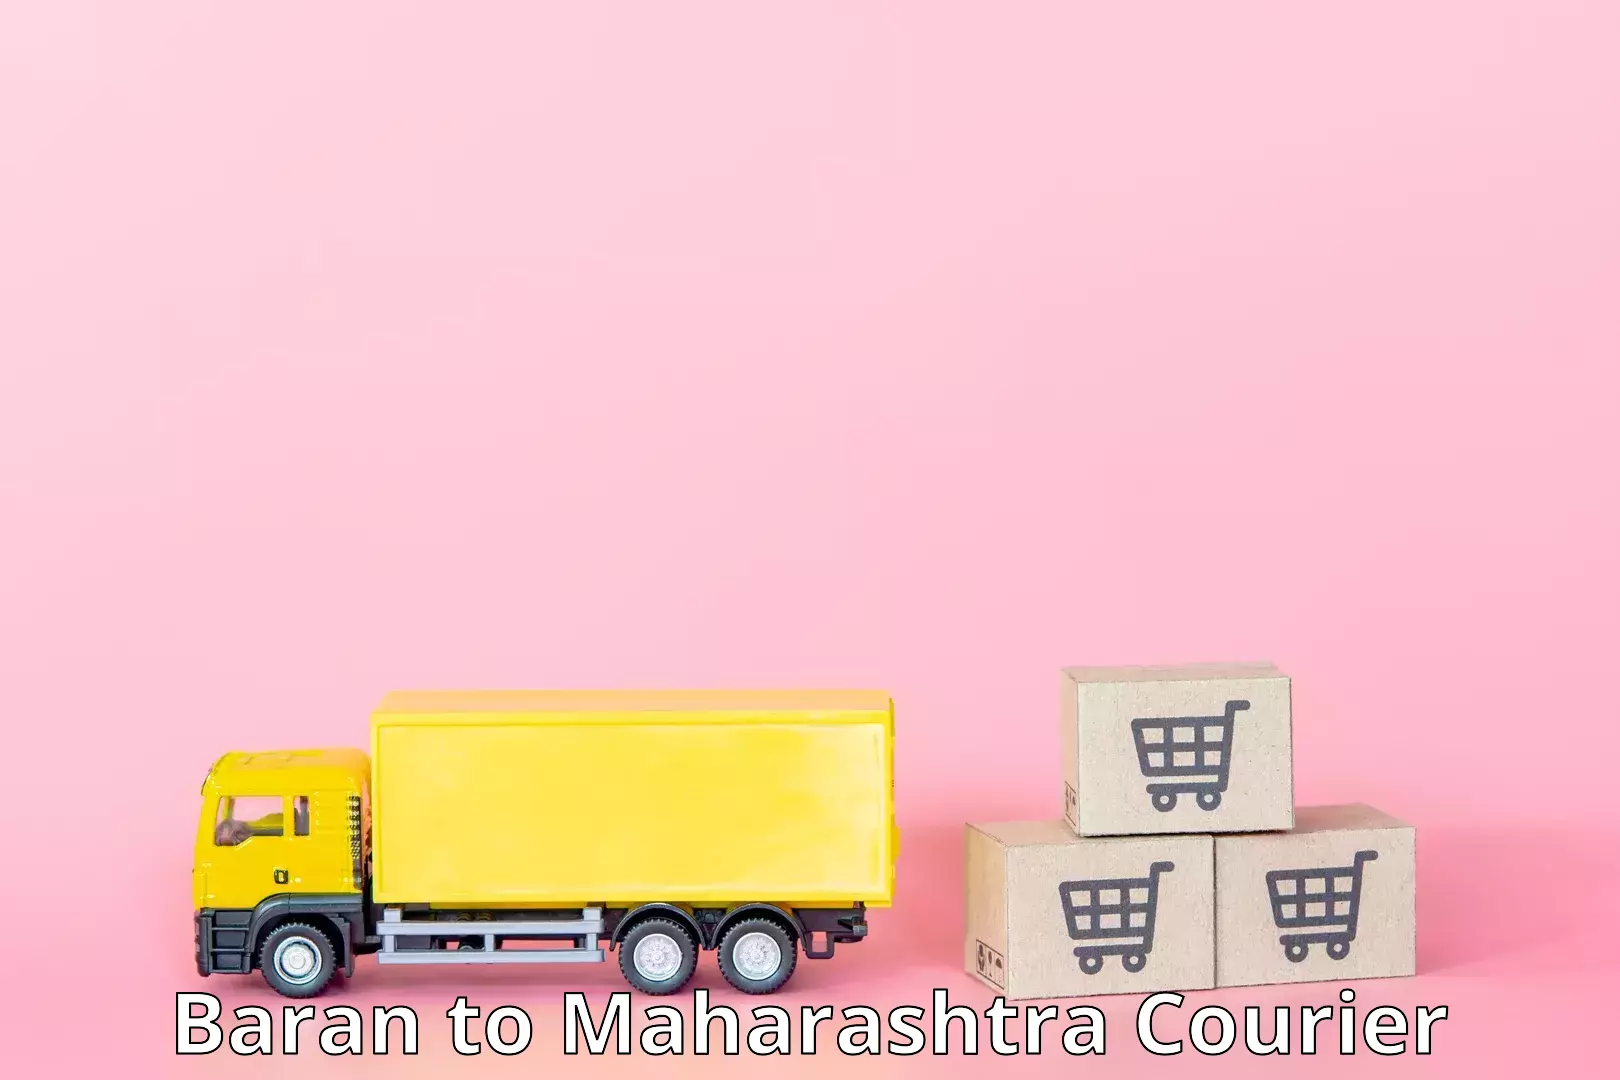 On-call courier service Baran to Maharashtra